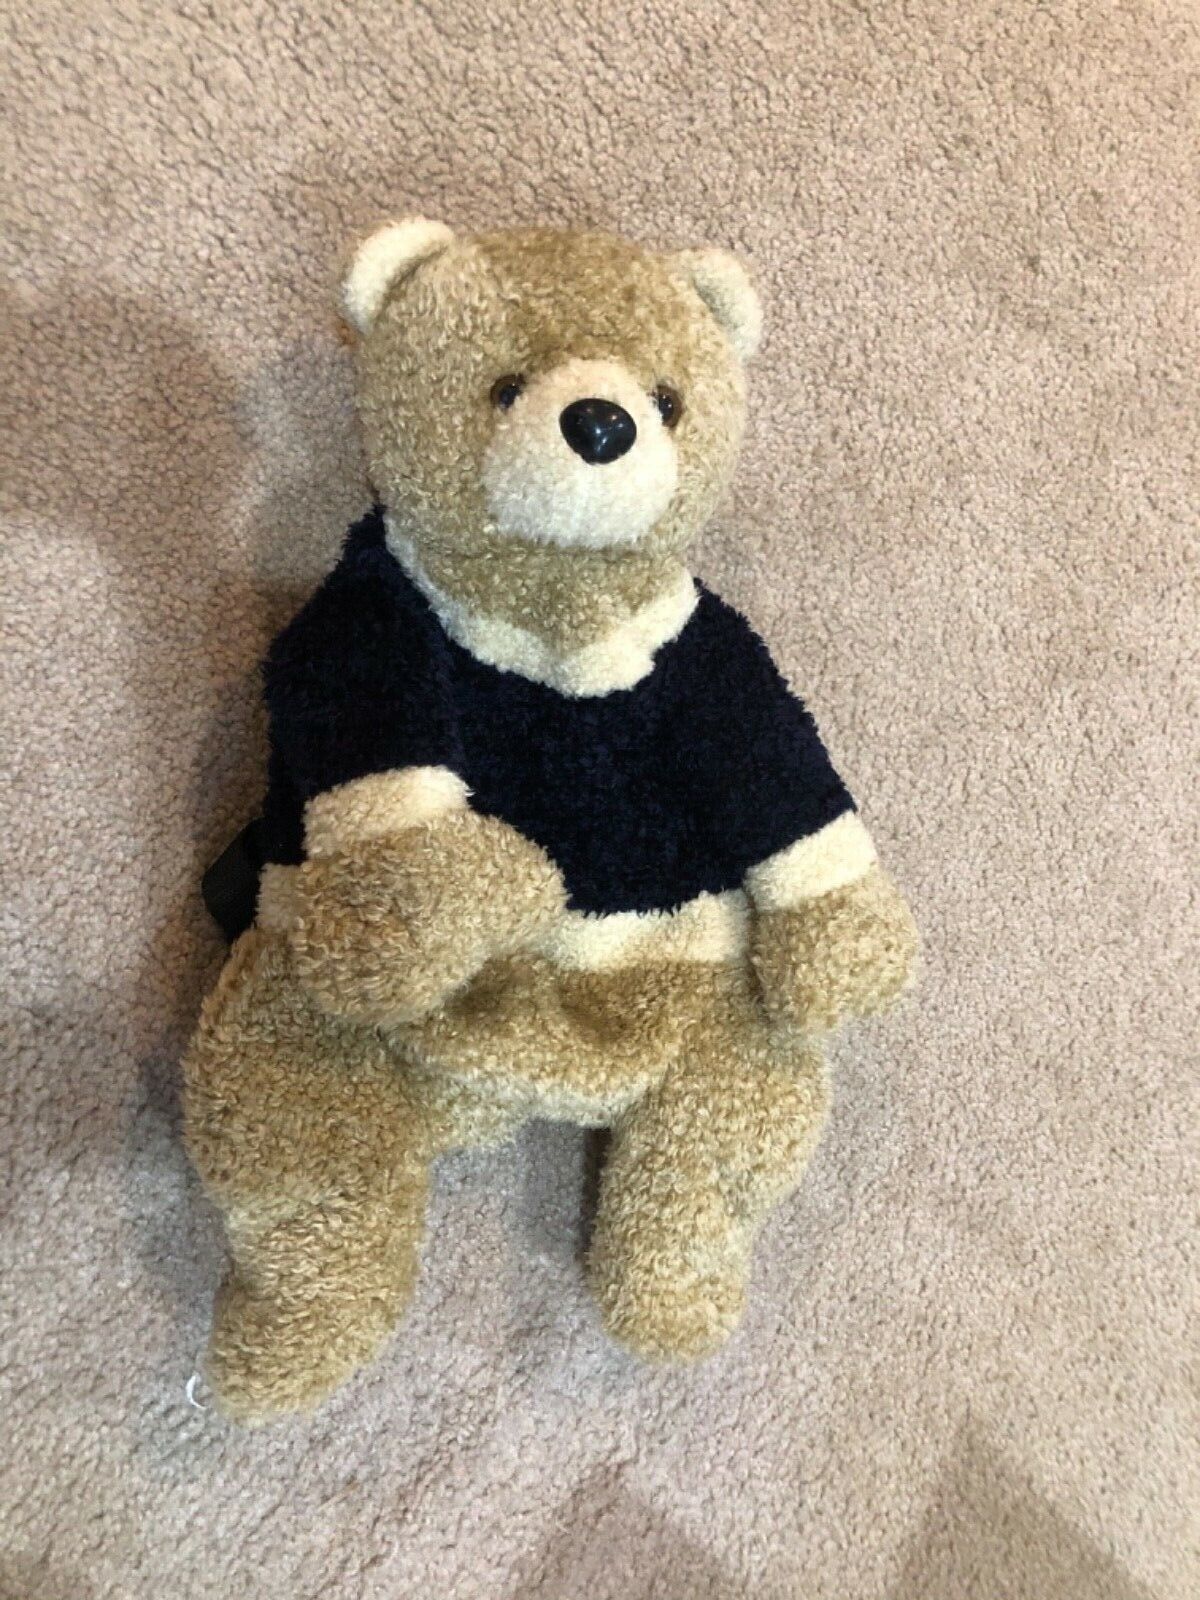 TUC TUC Manga Bear Backpack 18” Brown Oatmeal Bear Black Sweater Plush Stuffed - $27.79